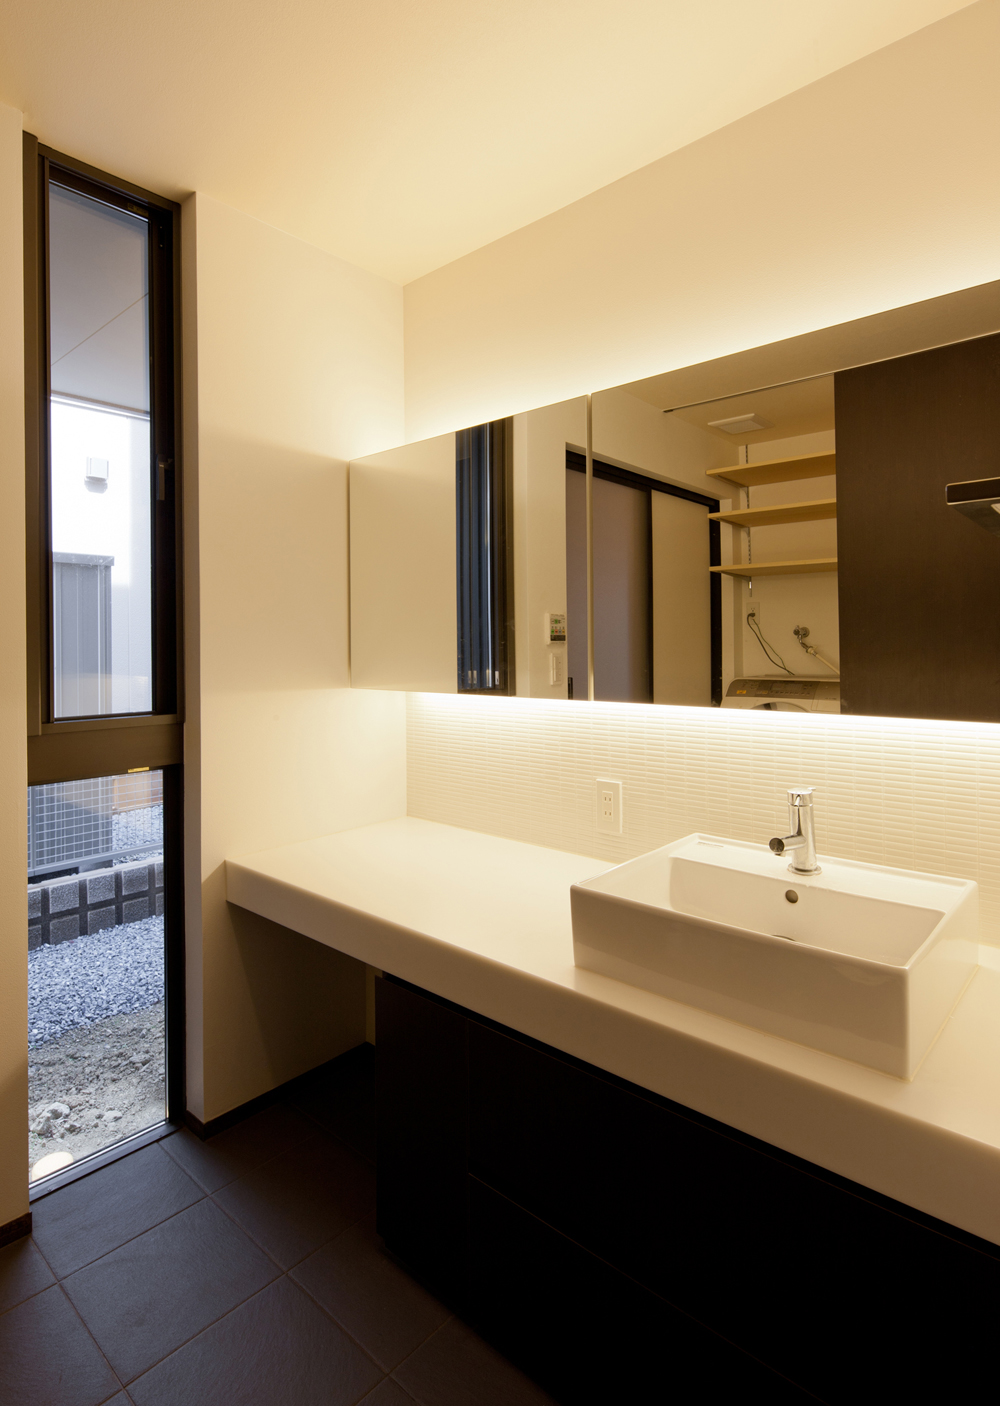 間接照明の柔らかい光と焦げ茶色のタイルが、落ち着いた雰囲気のある洗面空間に